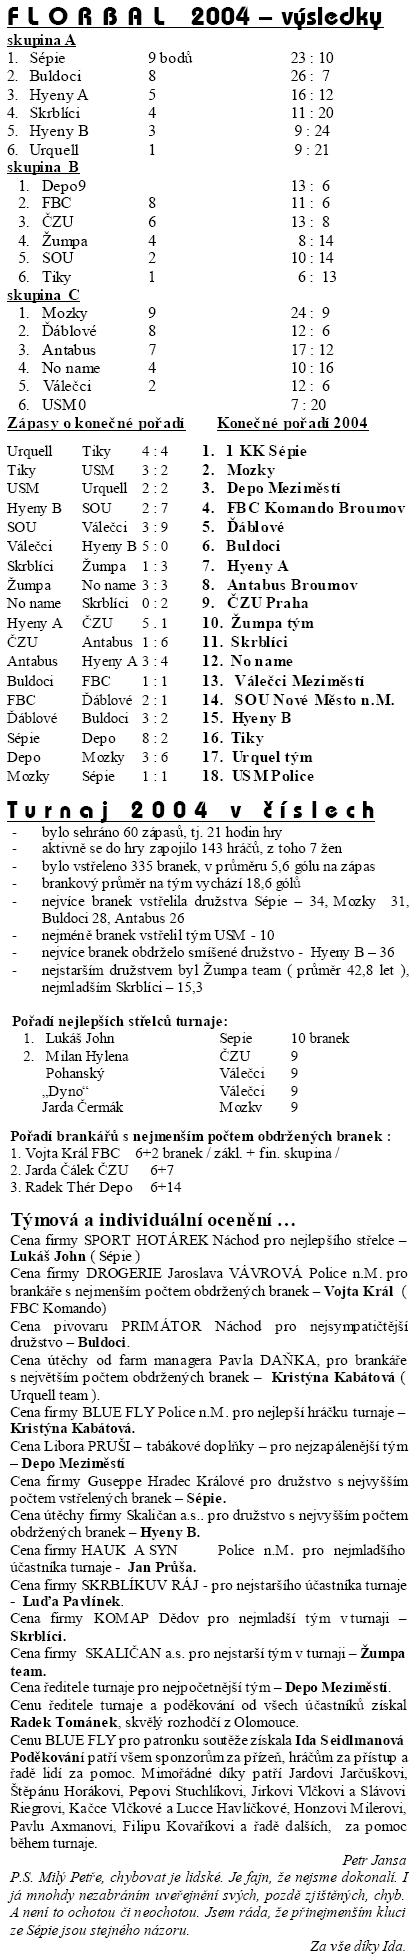 florbal_vysledky2004.gif